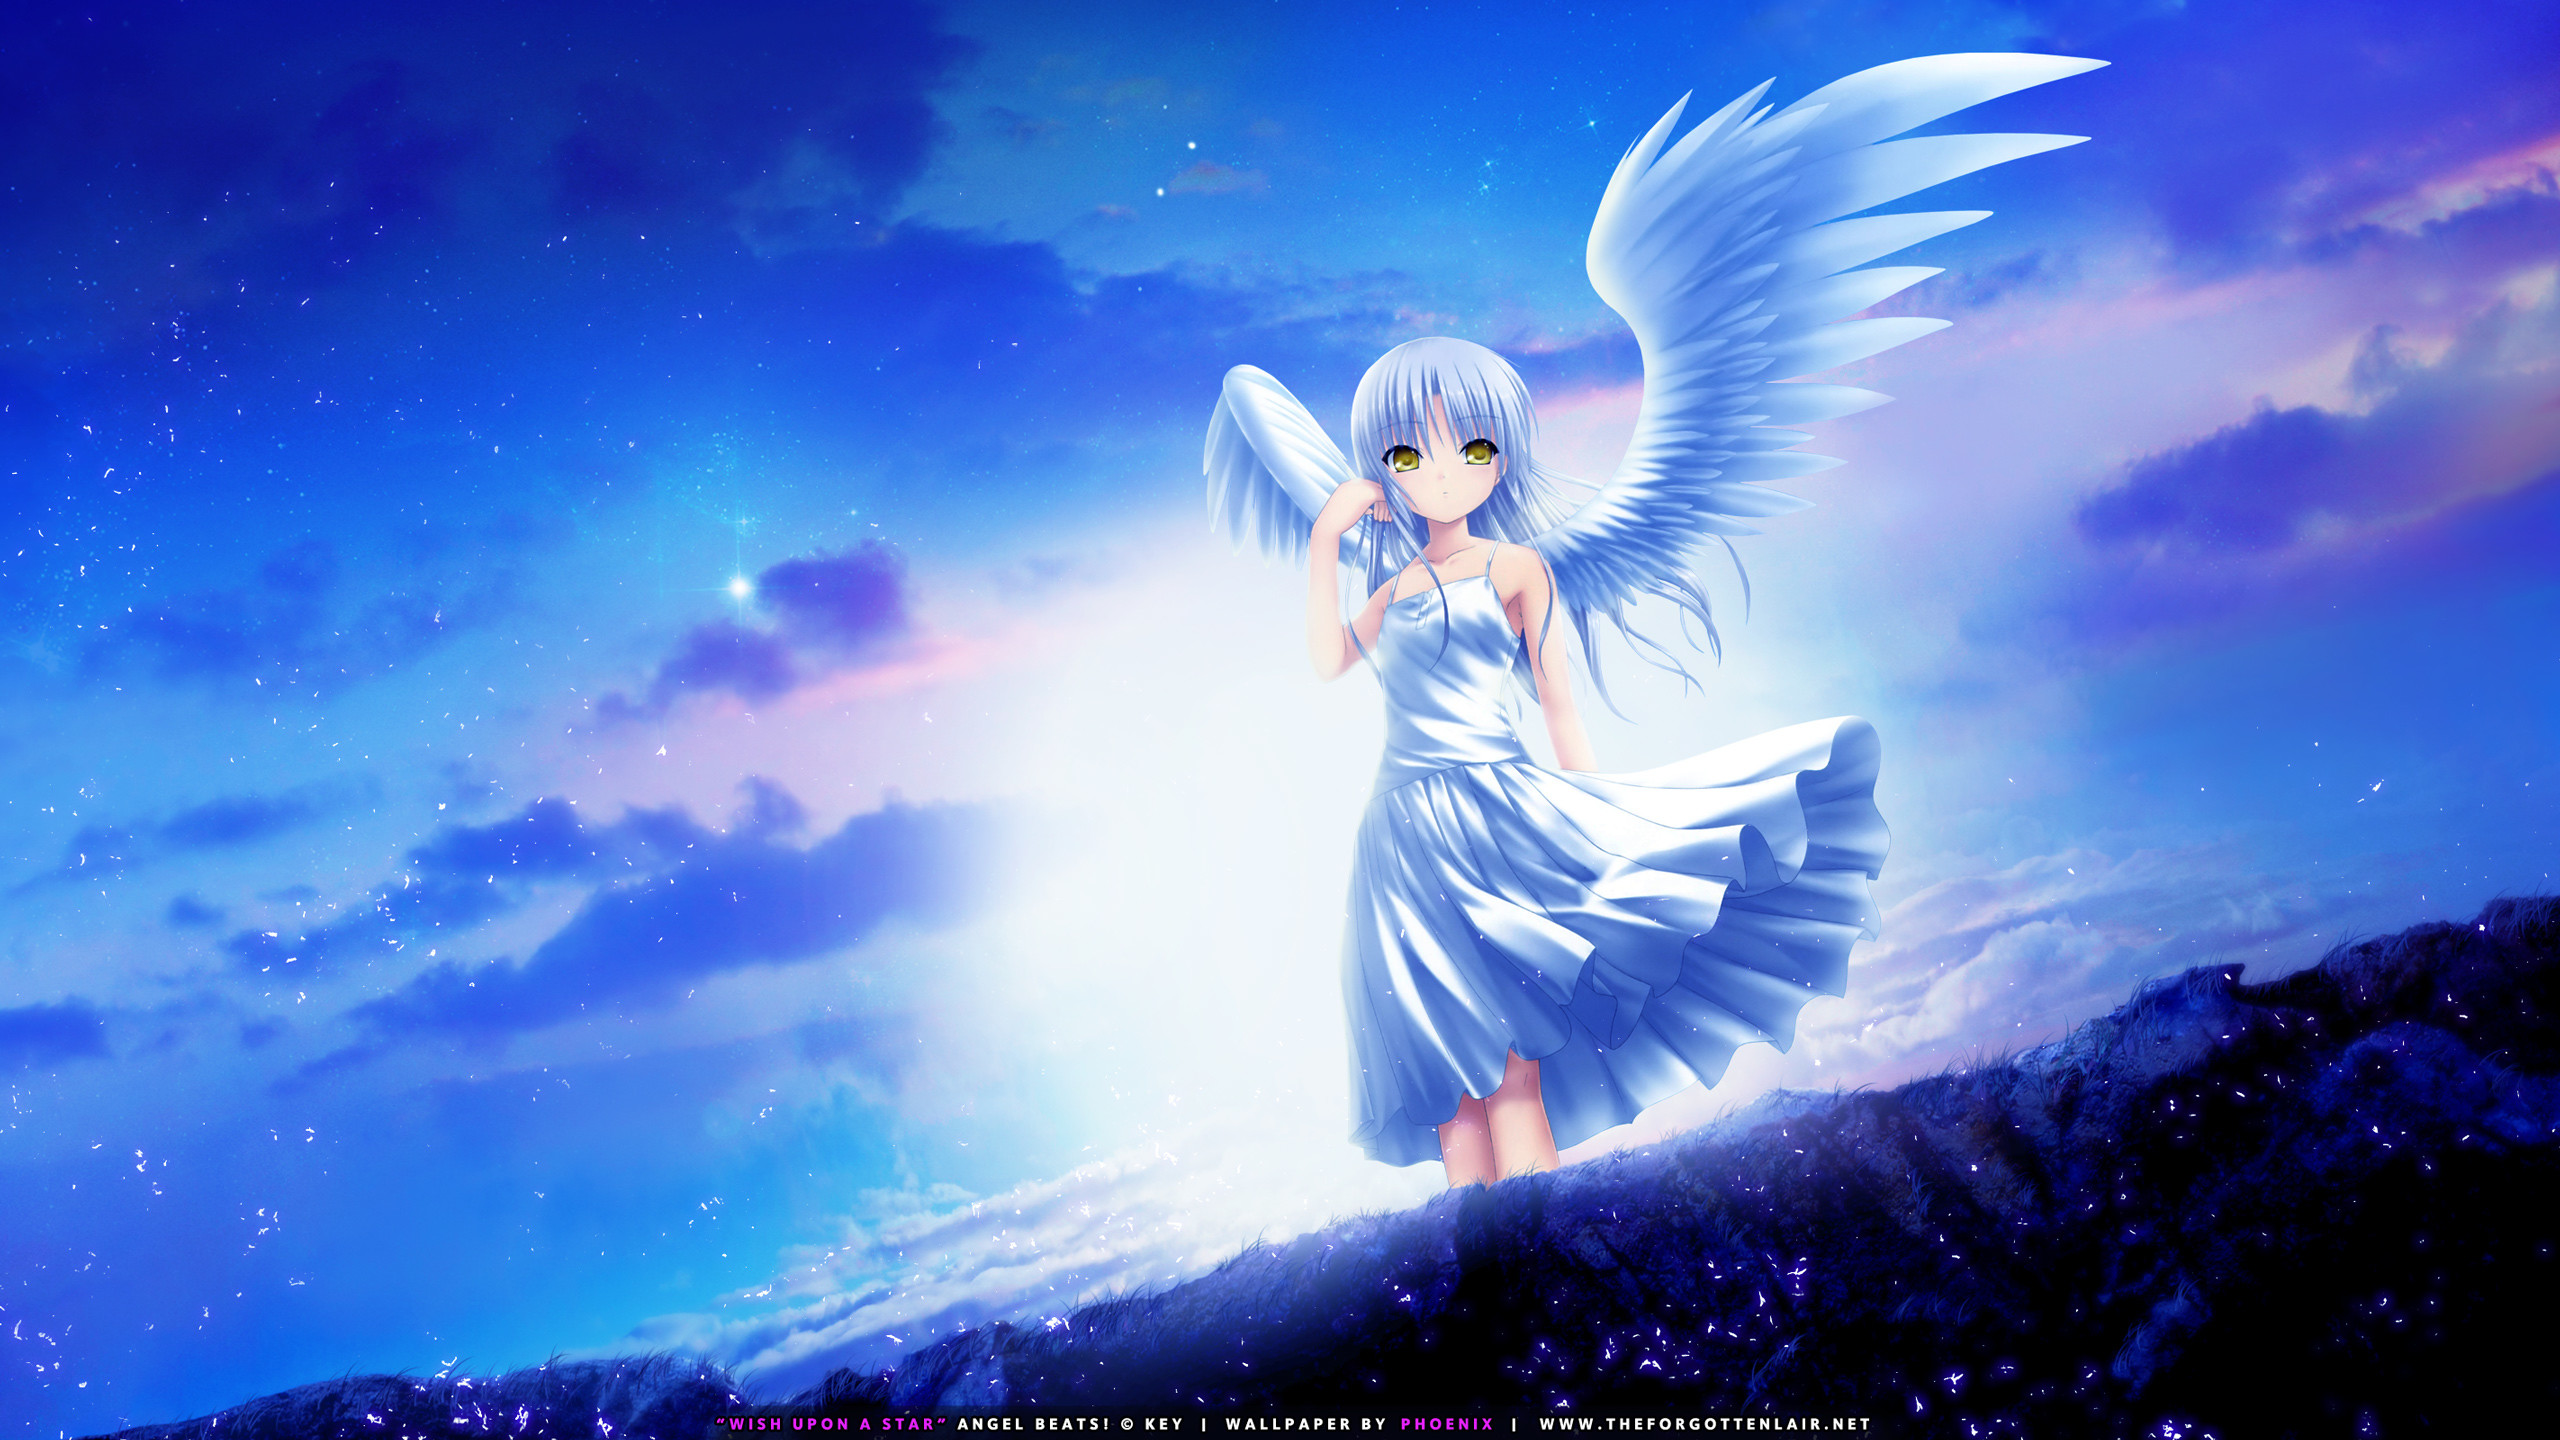 2560x1440 Tags: Anime, P.A. Works, KEY (Studio), Angel Beats!,